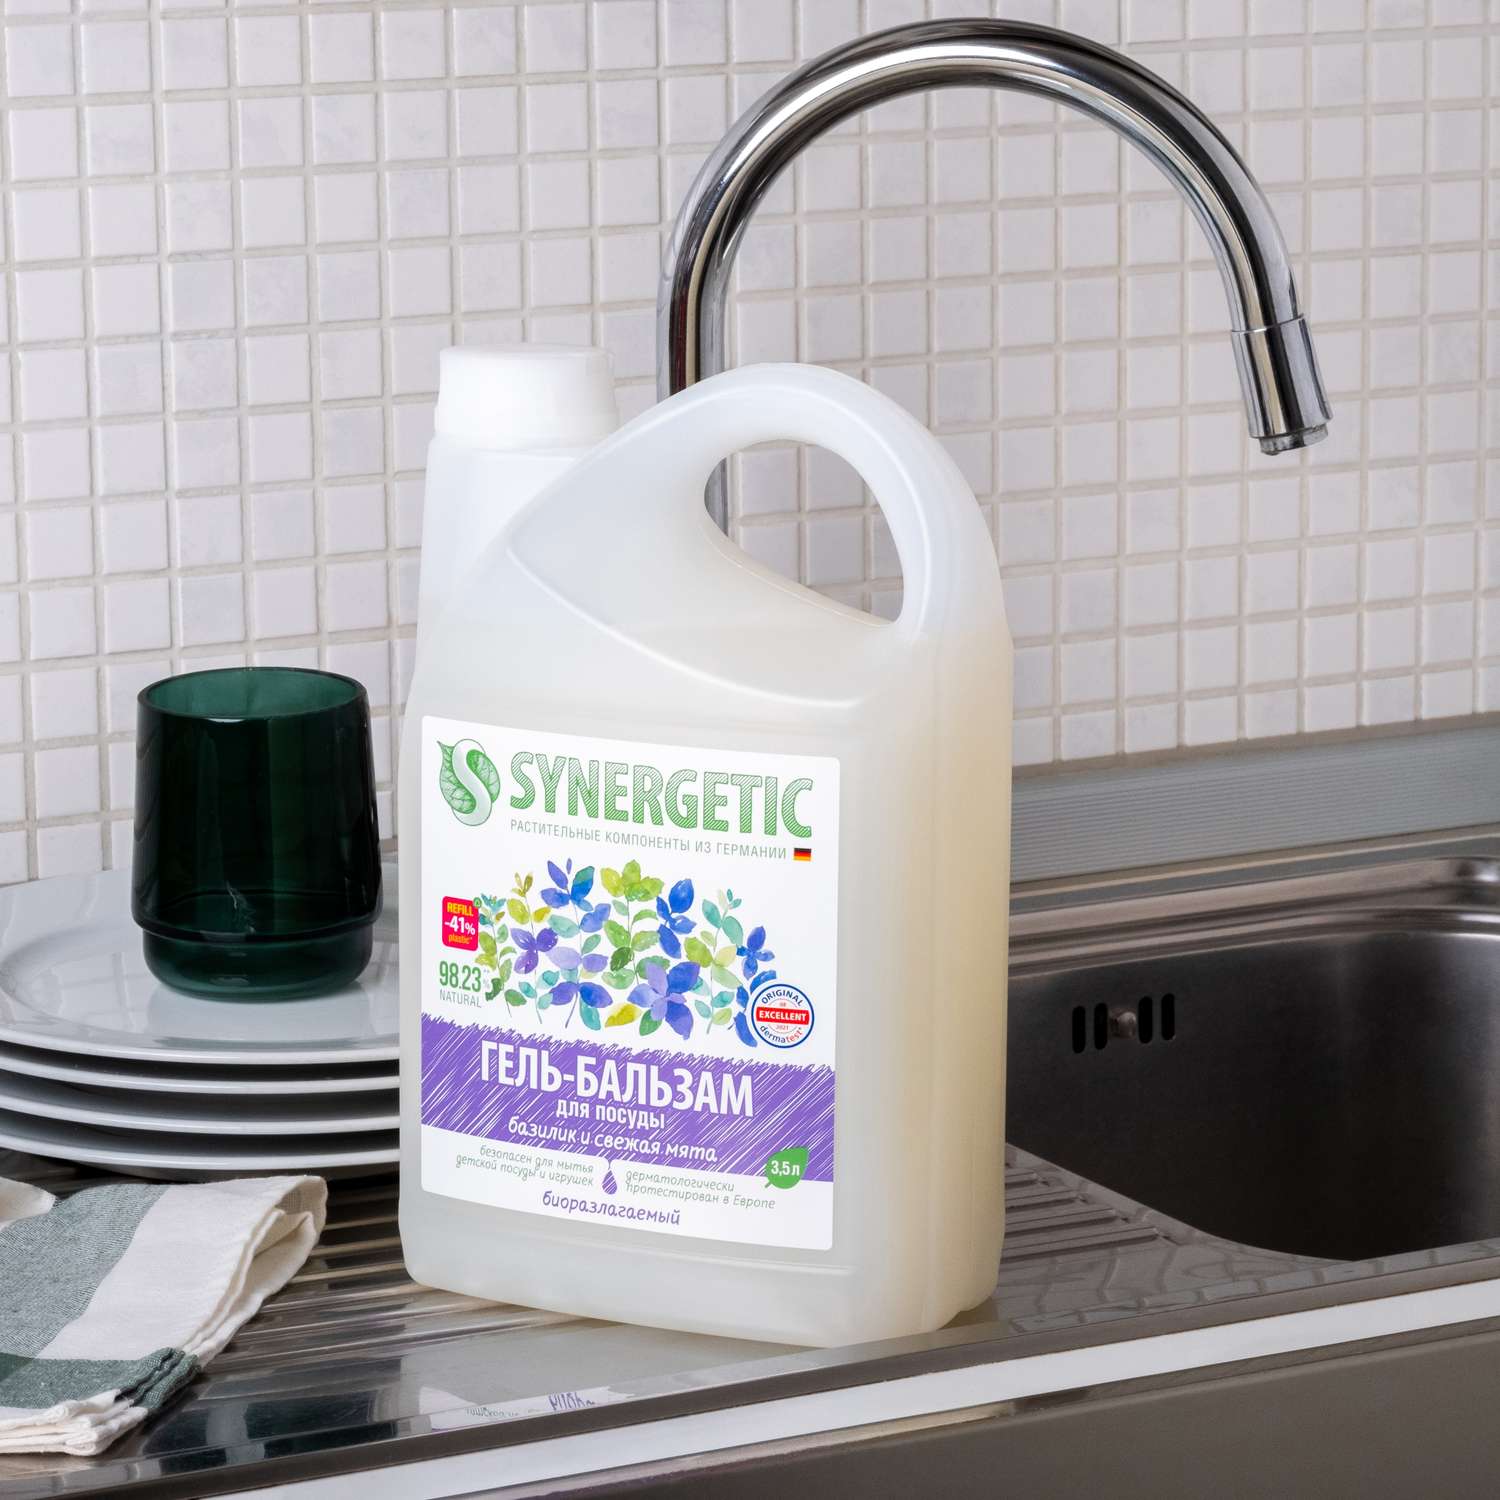 Гель-бальзам для мытья посуды Synergetic Базилик-Свежая мята 3.5л - фото 2